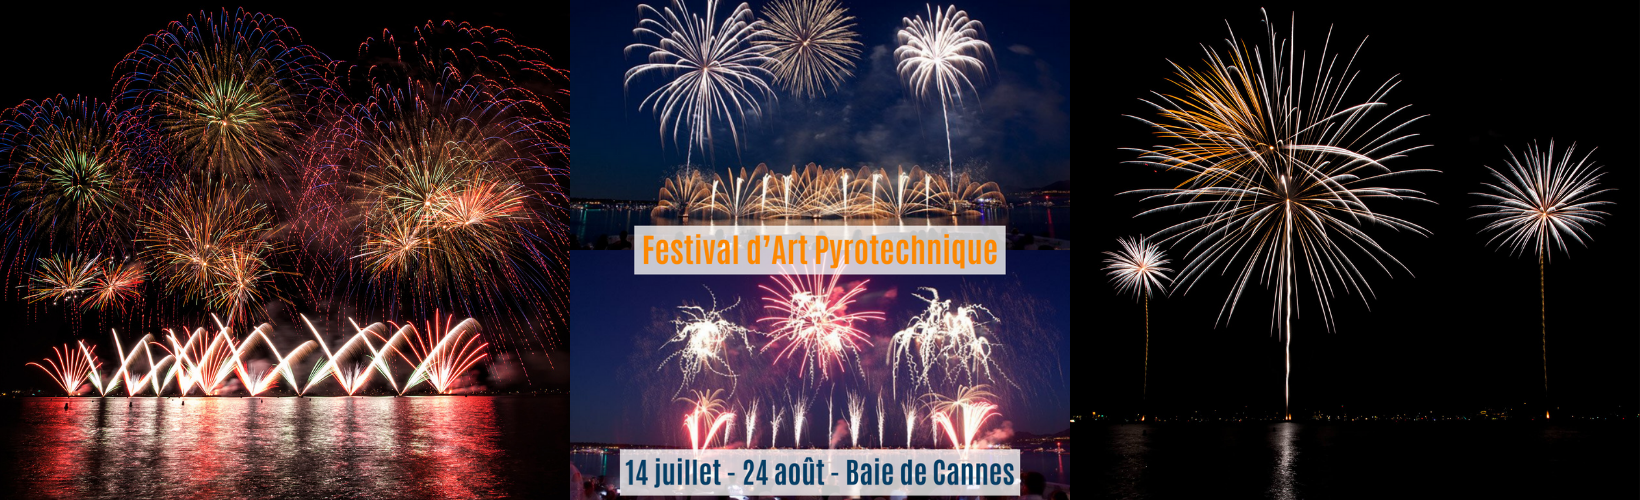 Festival d'art pyrotechnique Cannes